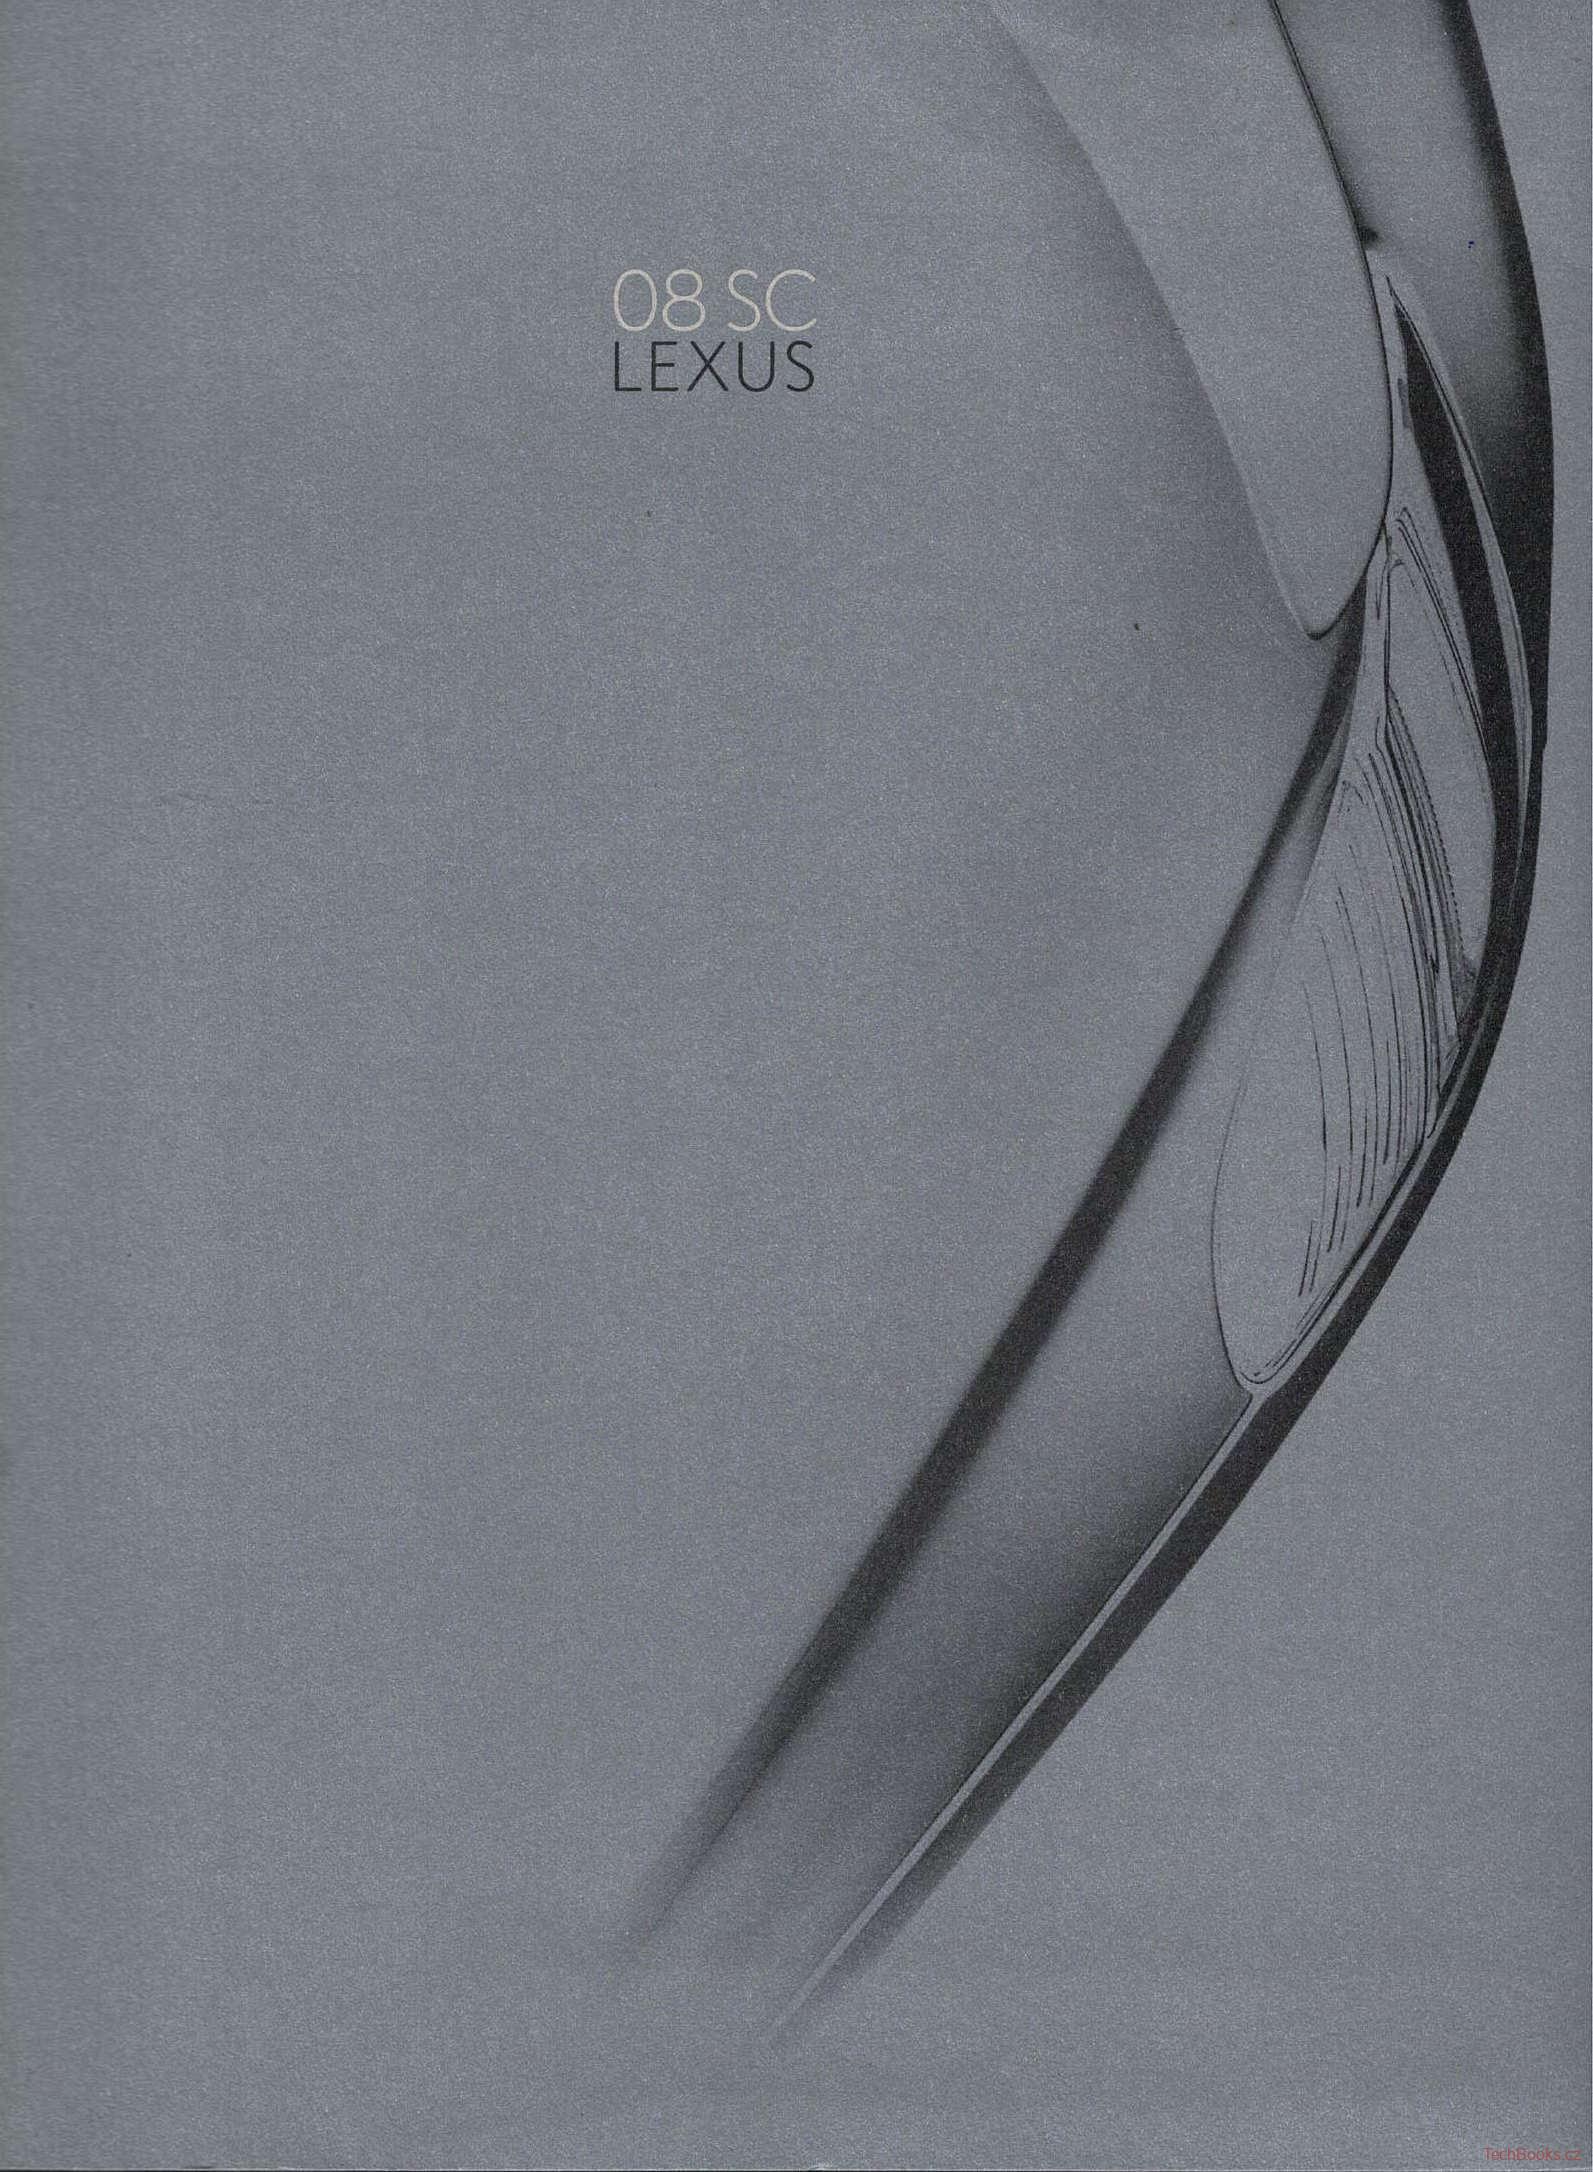 Lexus SC 2008 (Prospekt)